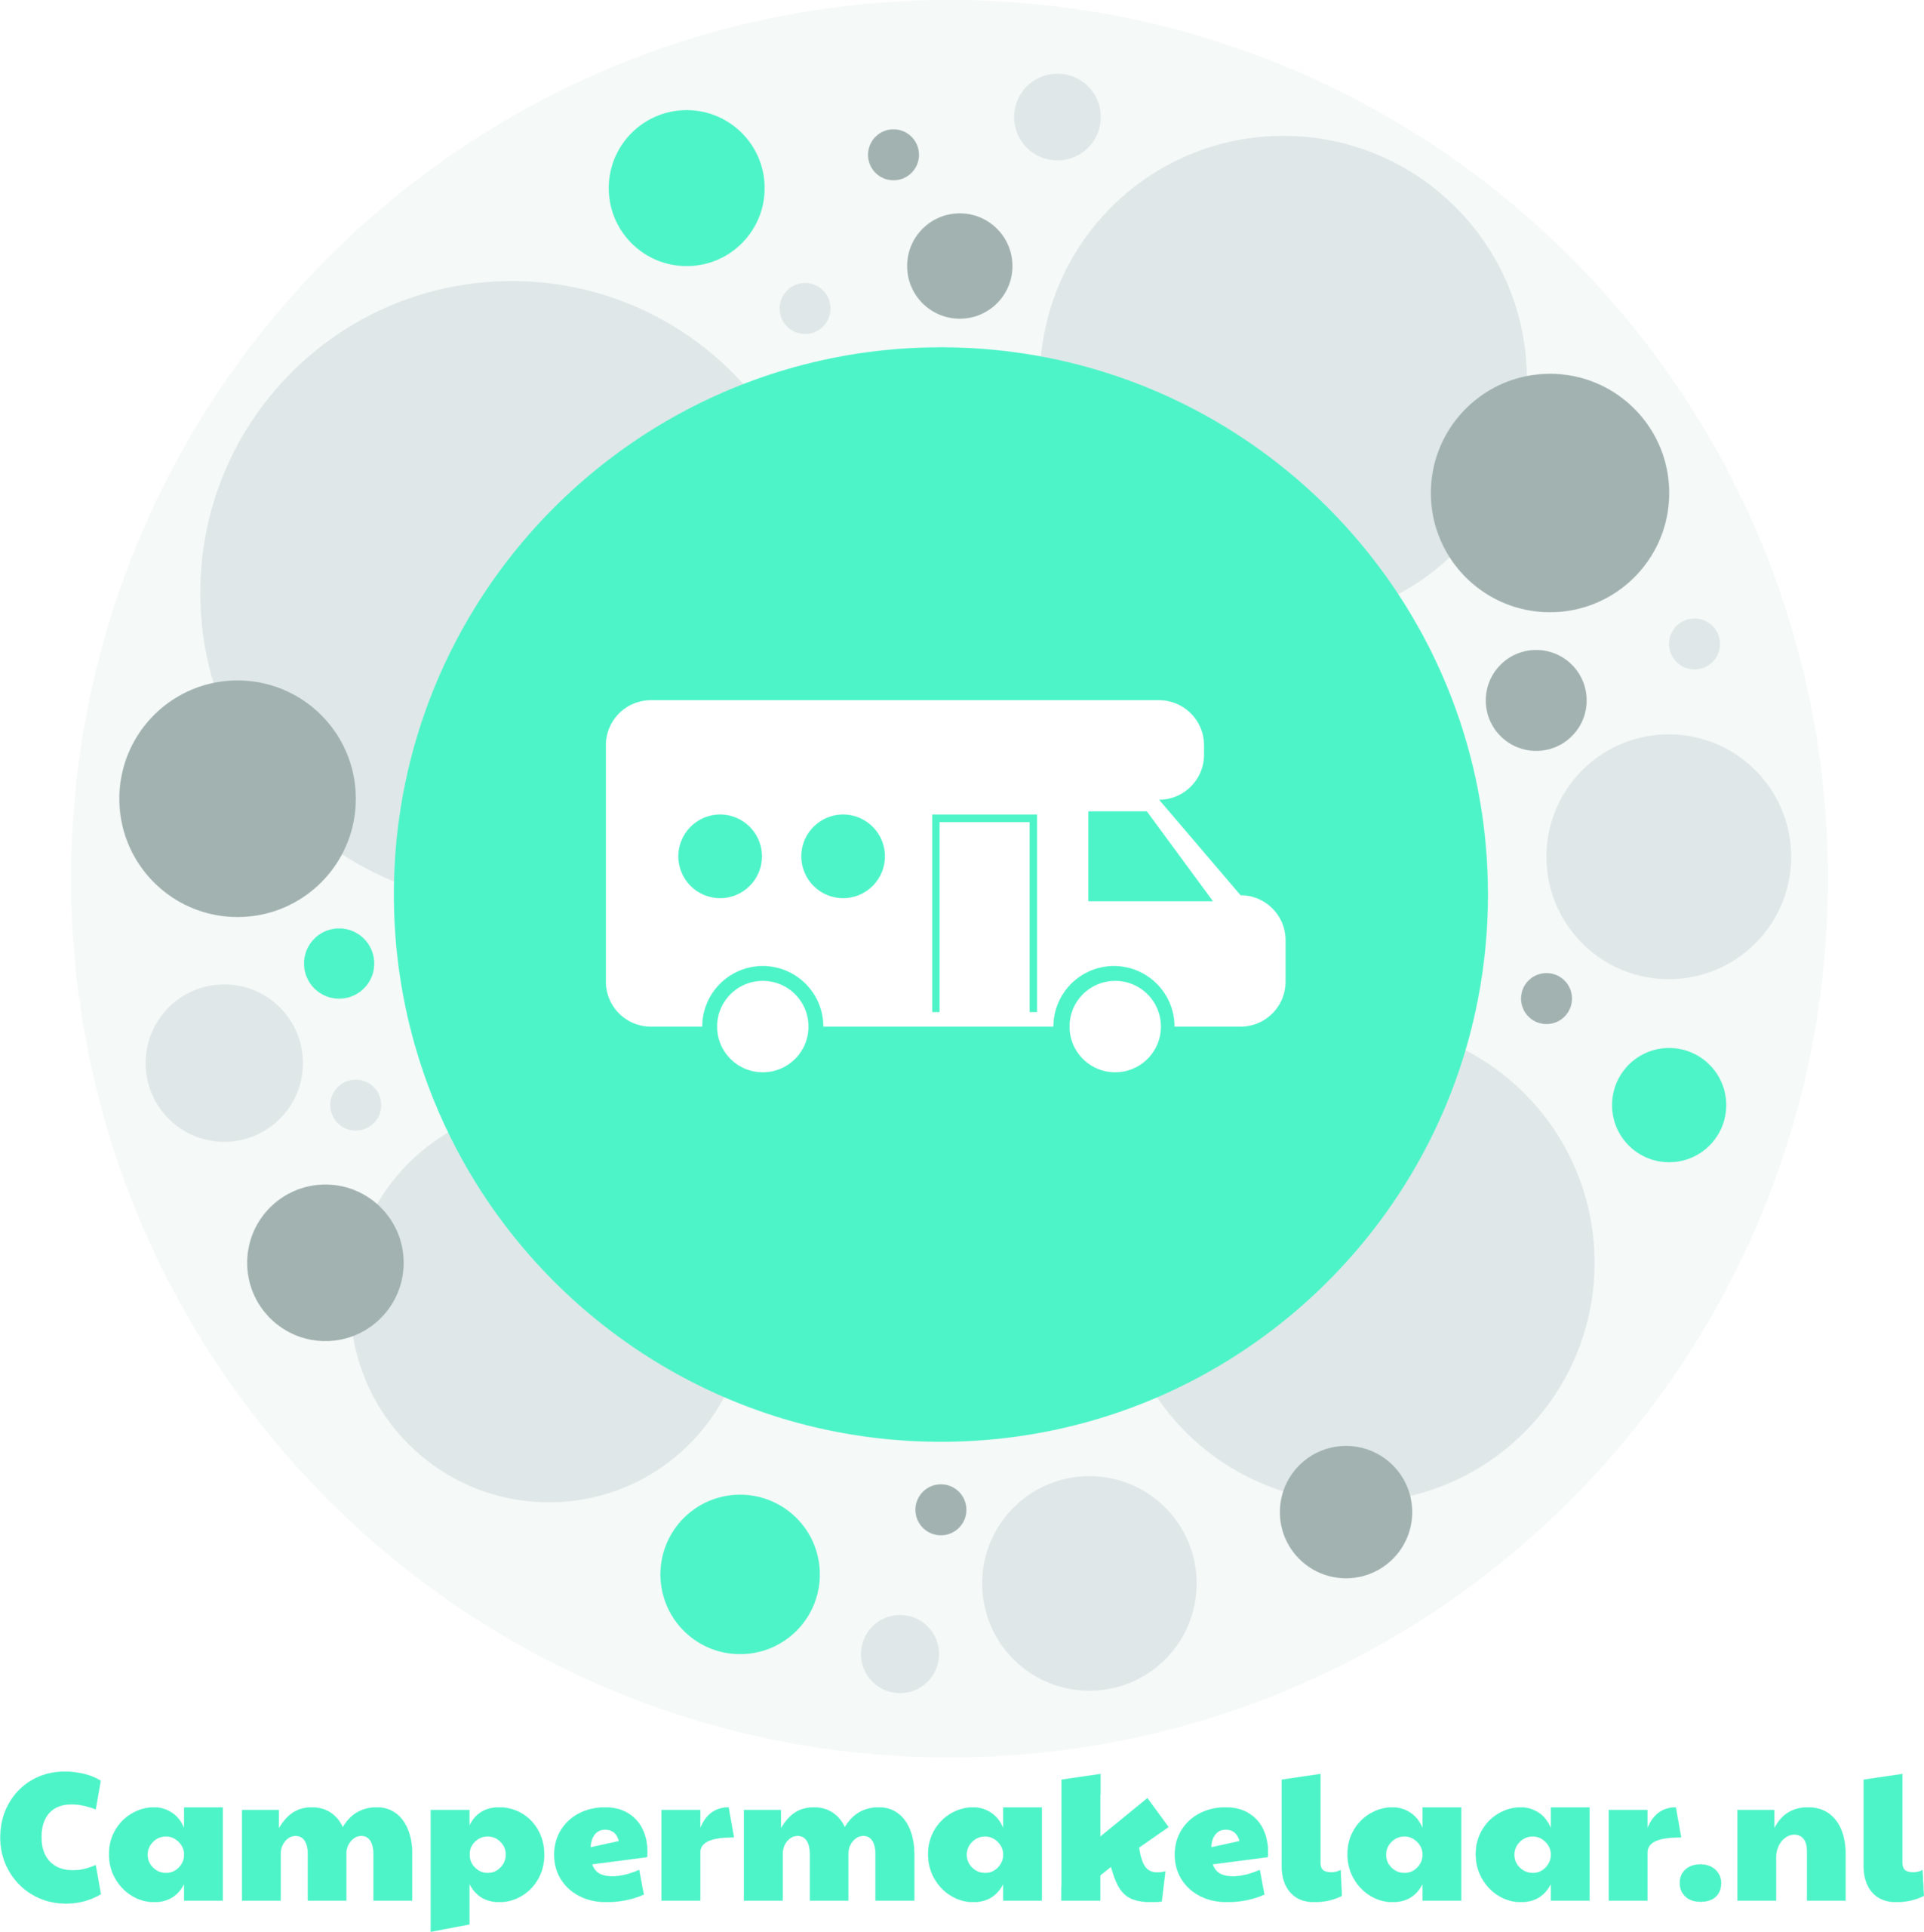 Campermakelaar.nl